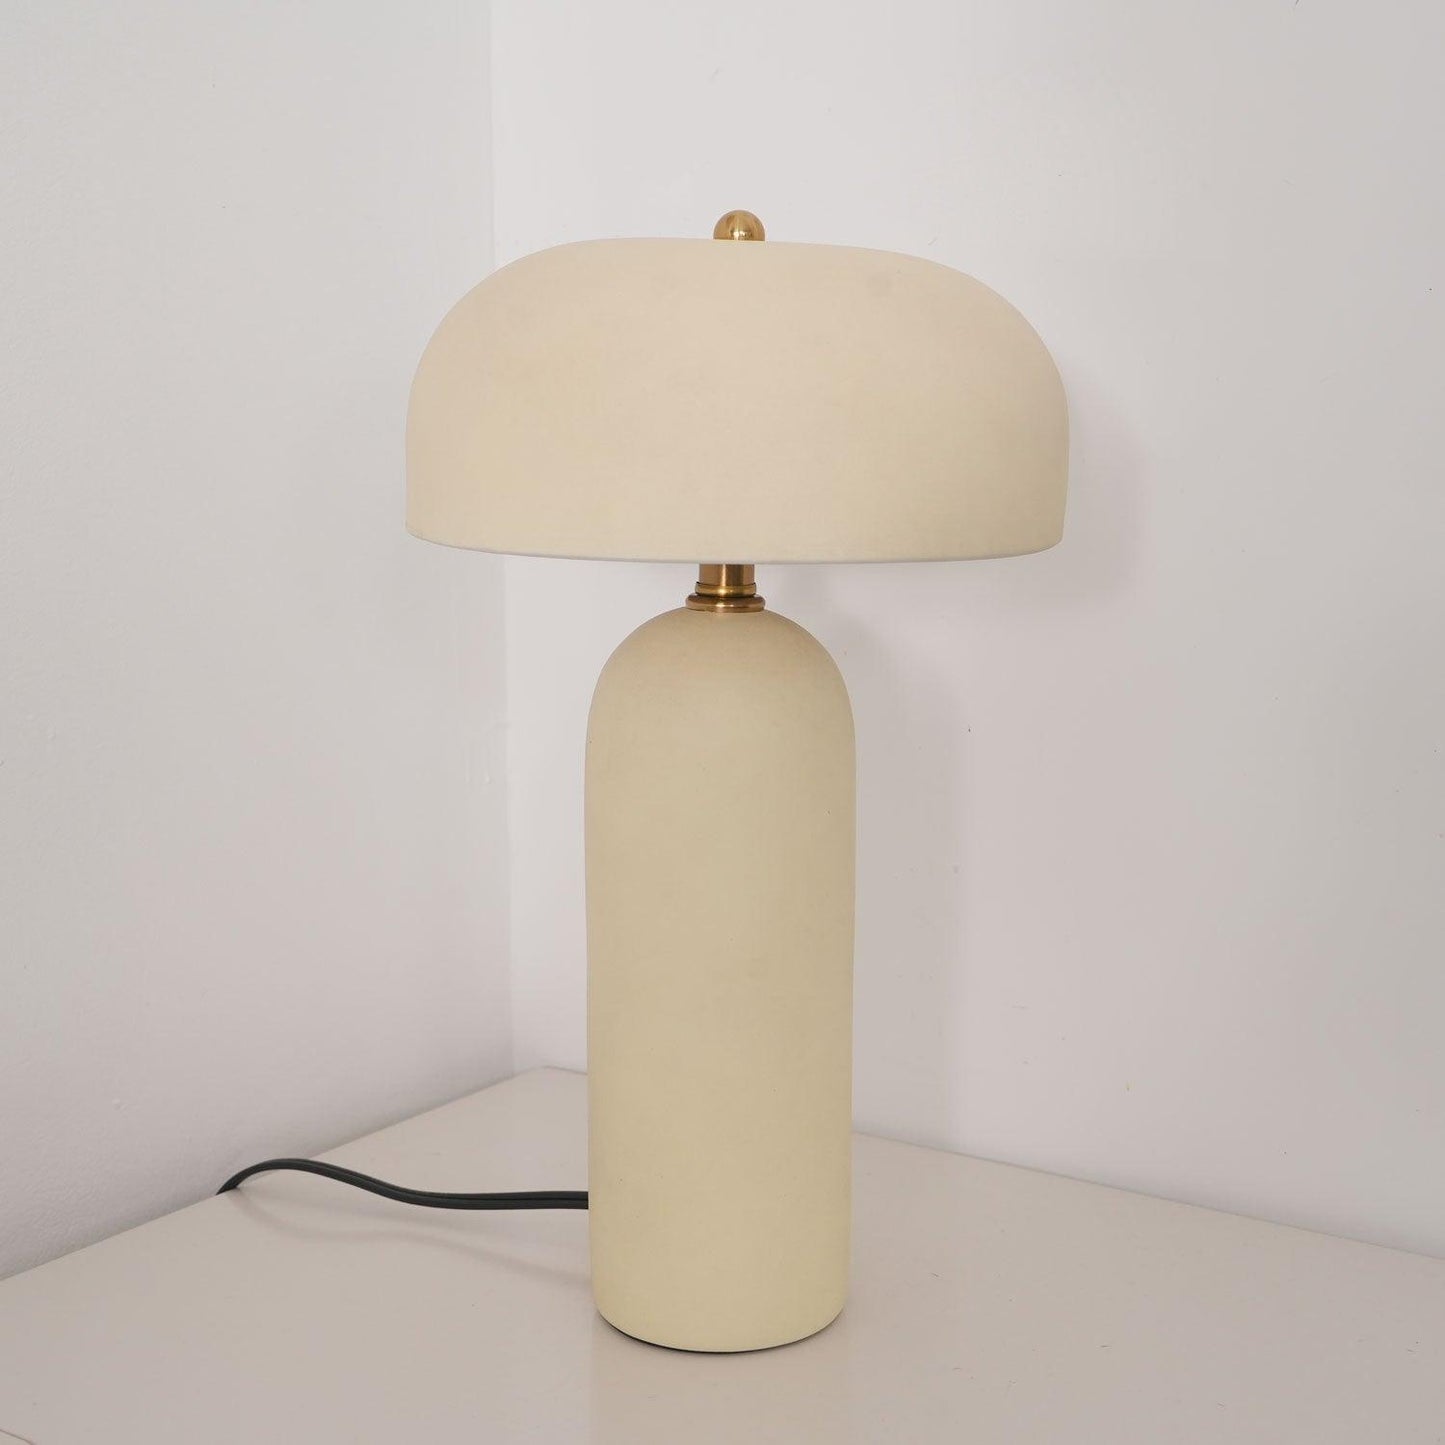 Fungi Glow Table Lamp